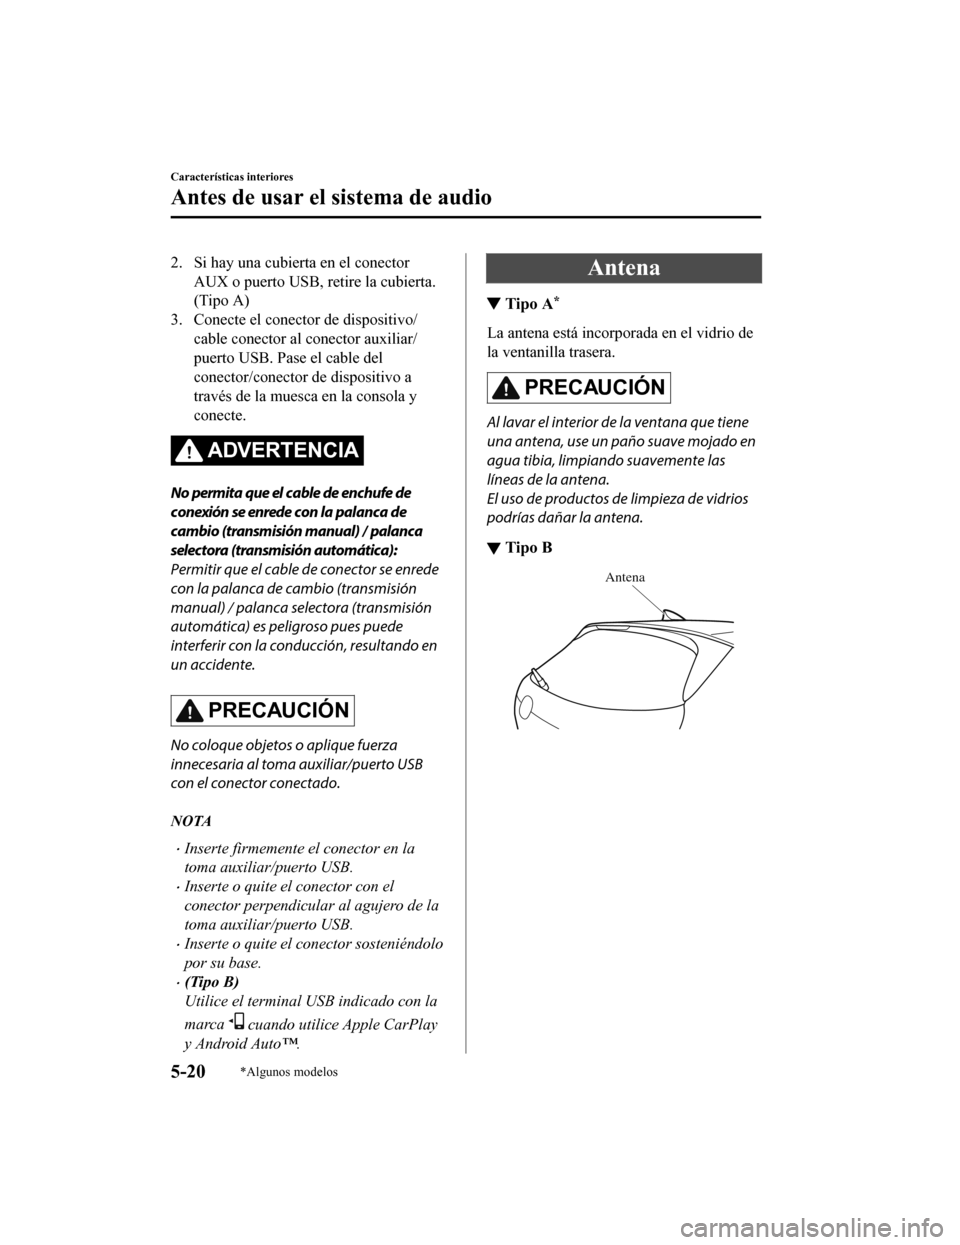 MAZDA MODEL CX-5 2020  Manual del propietario (in Spanish) 2. Si hay una cubierta en el conectorAUX o puerto USB, retire la cubierta.
(Tipo A)
3. Conecte el conector de dispositivo/ cable conector al conector auxiliar/
puerto USB. Pase el cable del
conector/c